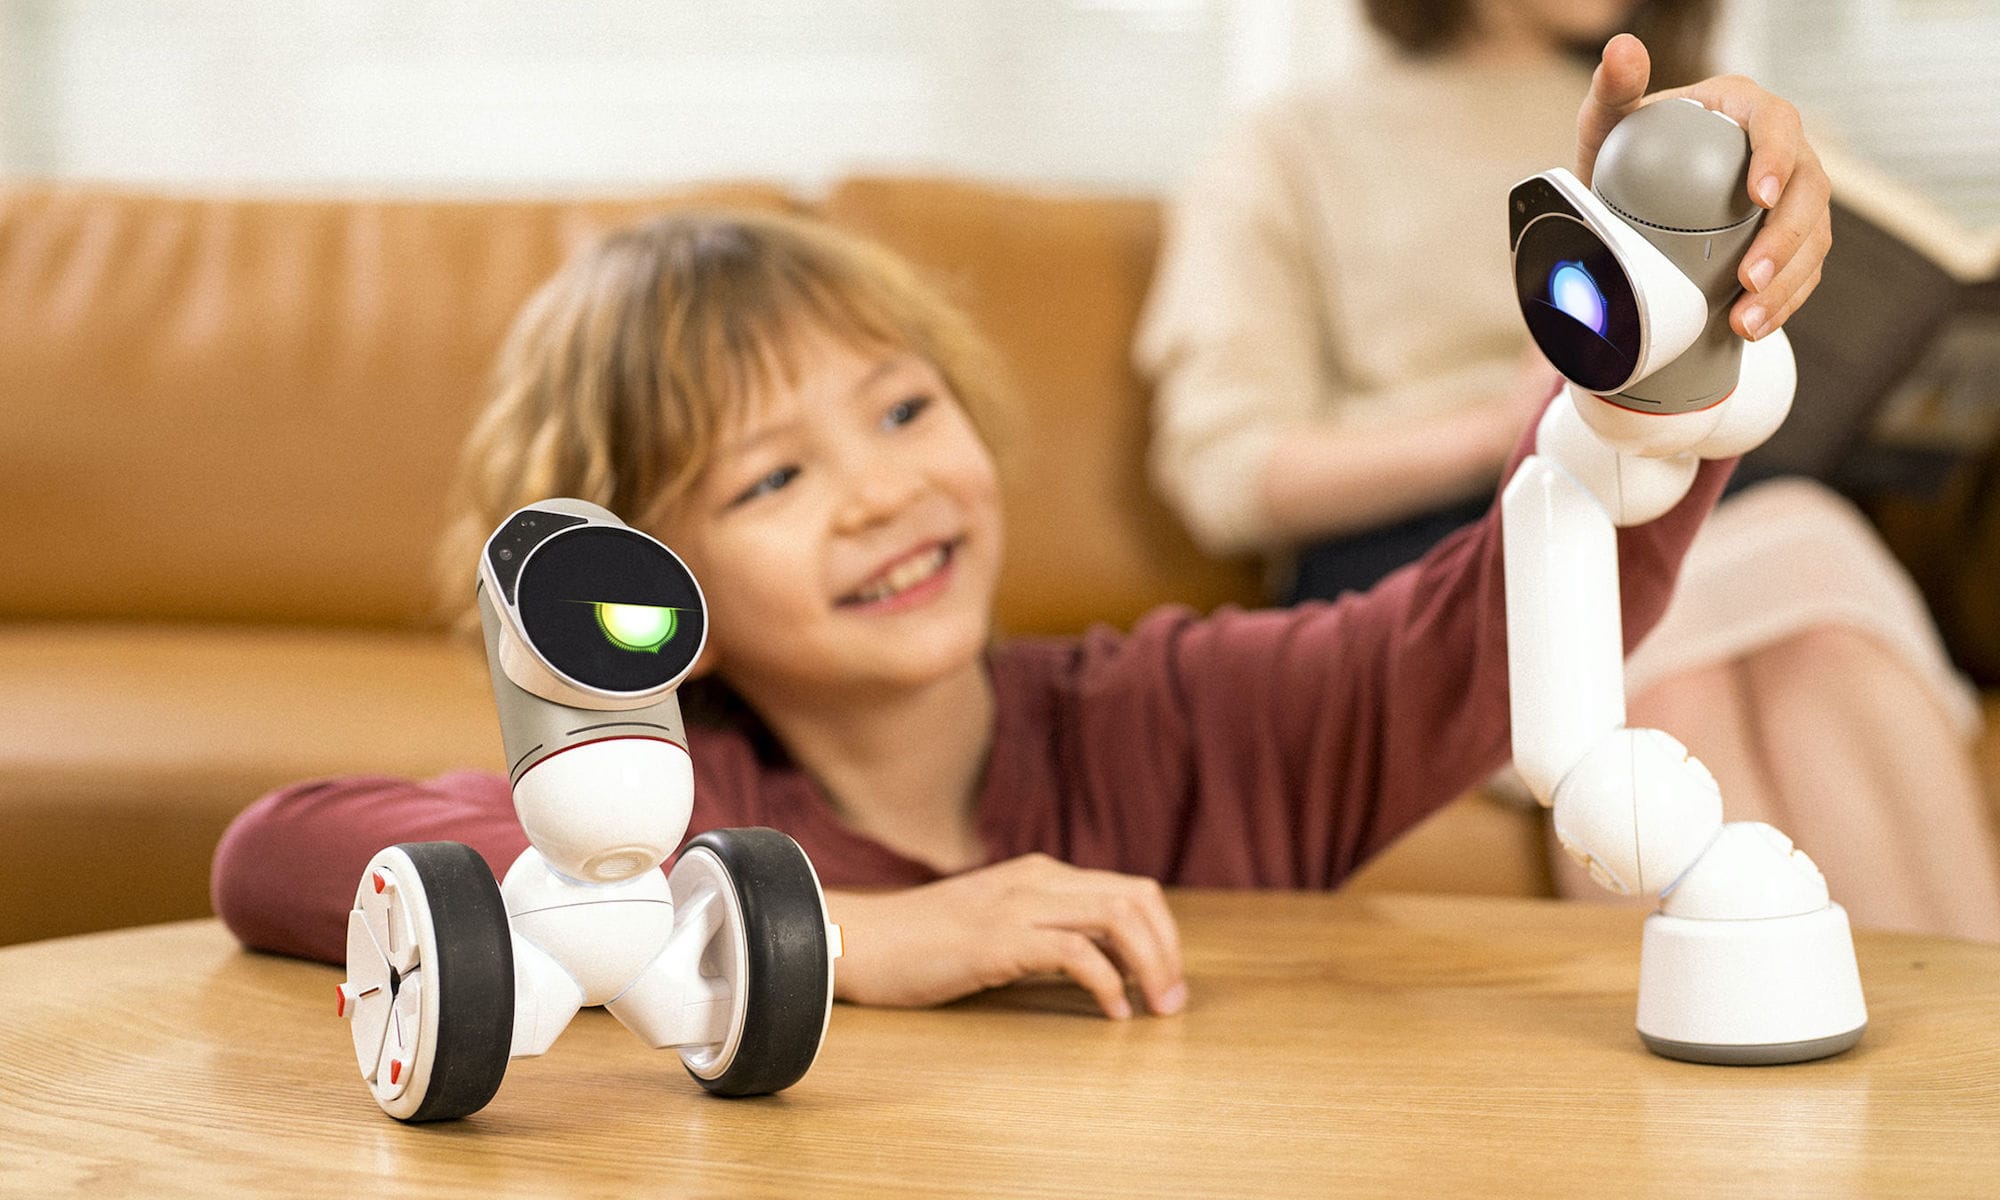 Esses robôs futuristas podem realmente facilitar sua vida